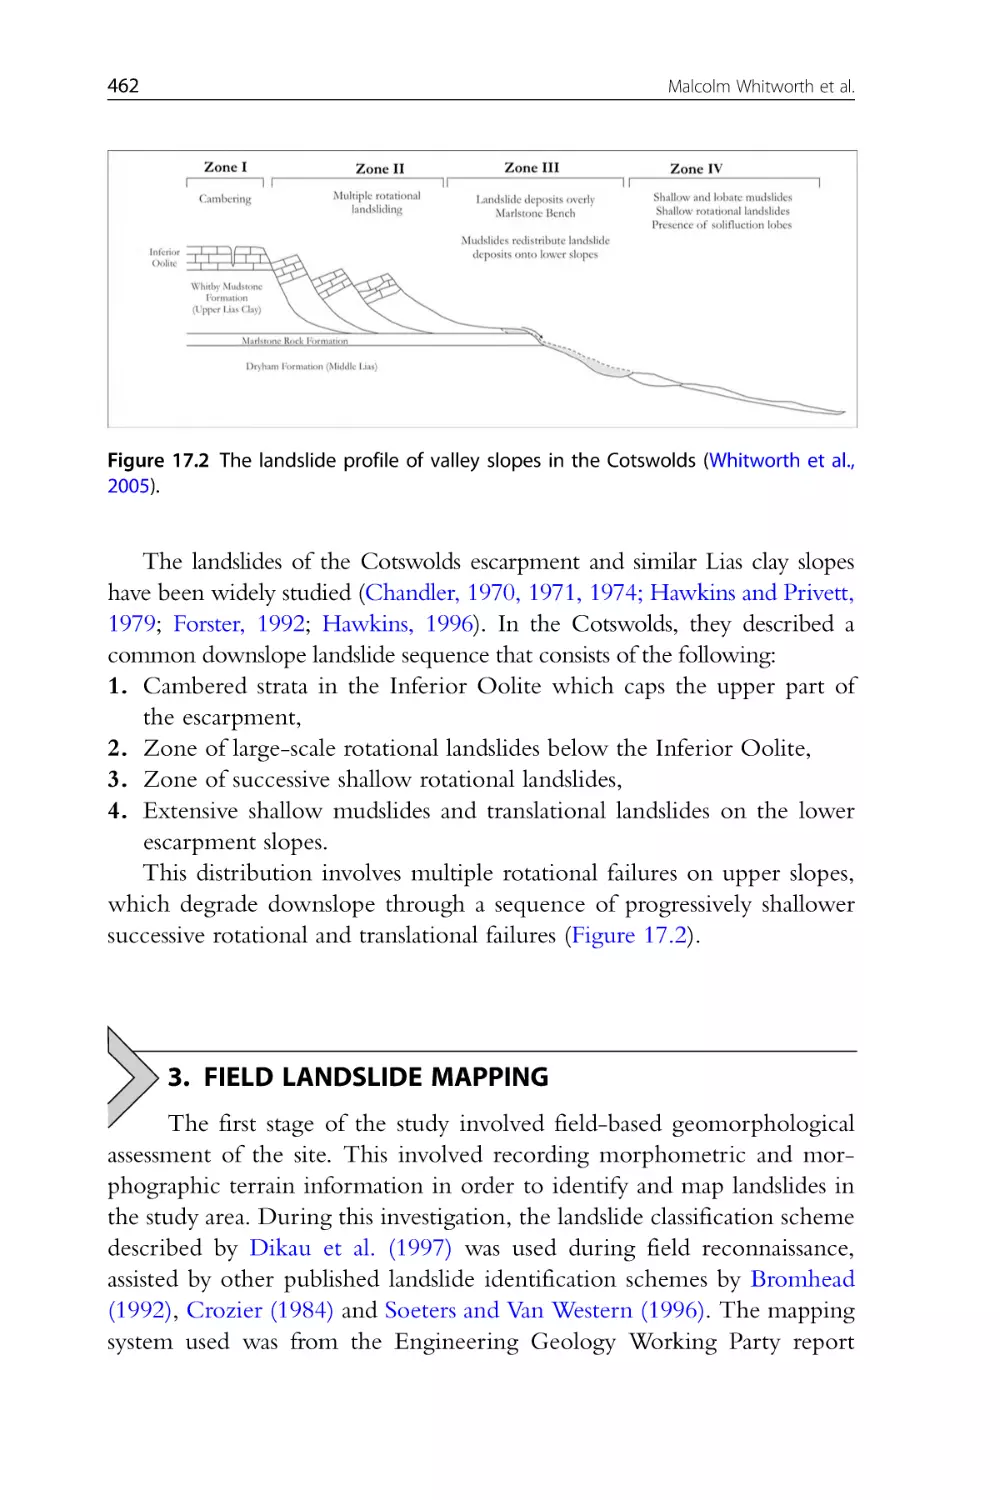 3. Field Landslide Mapping